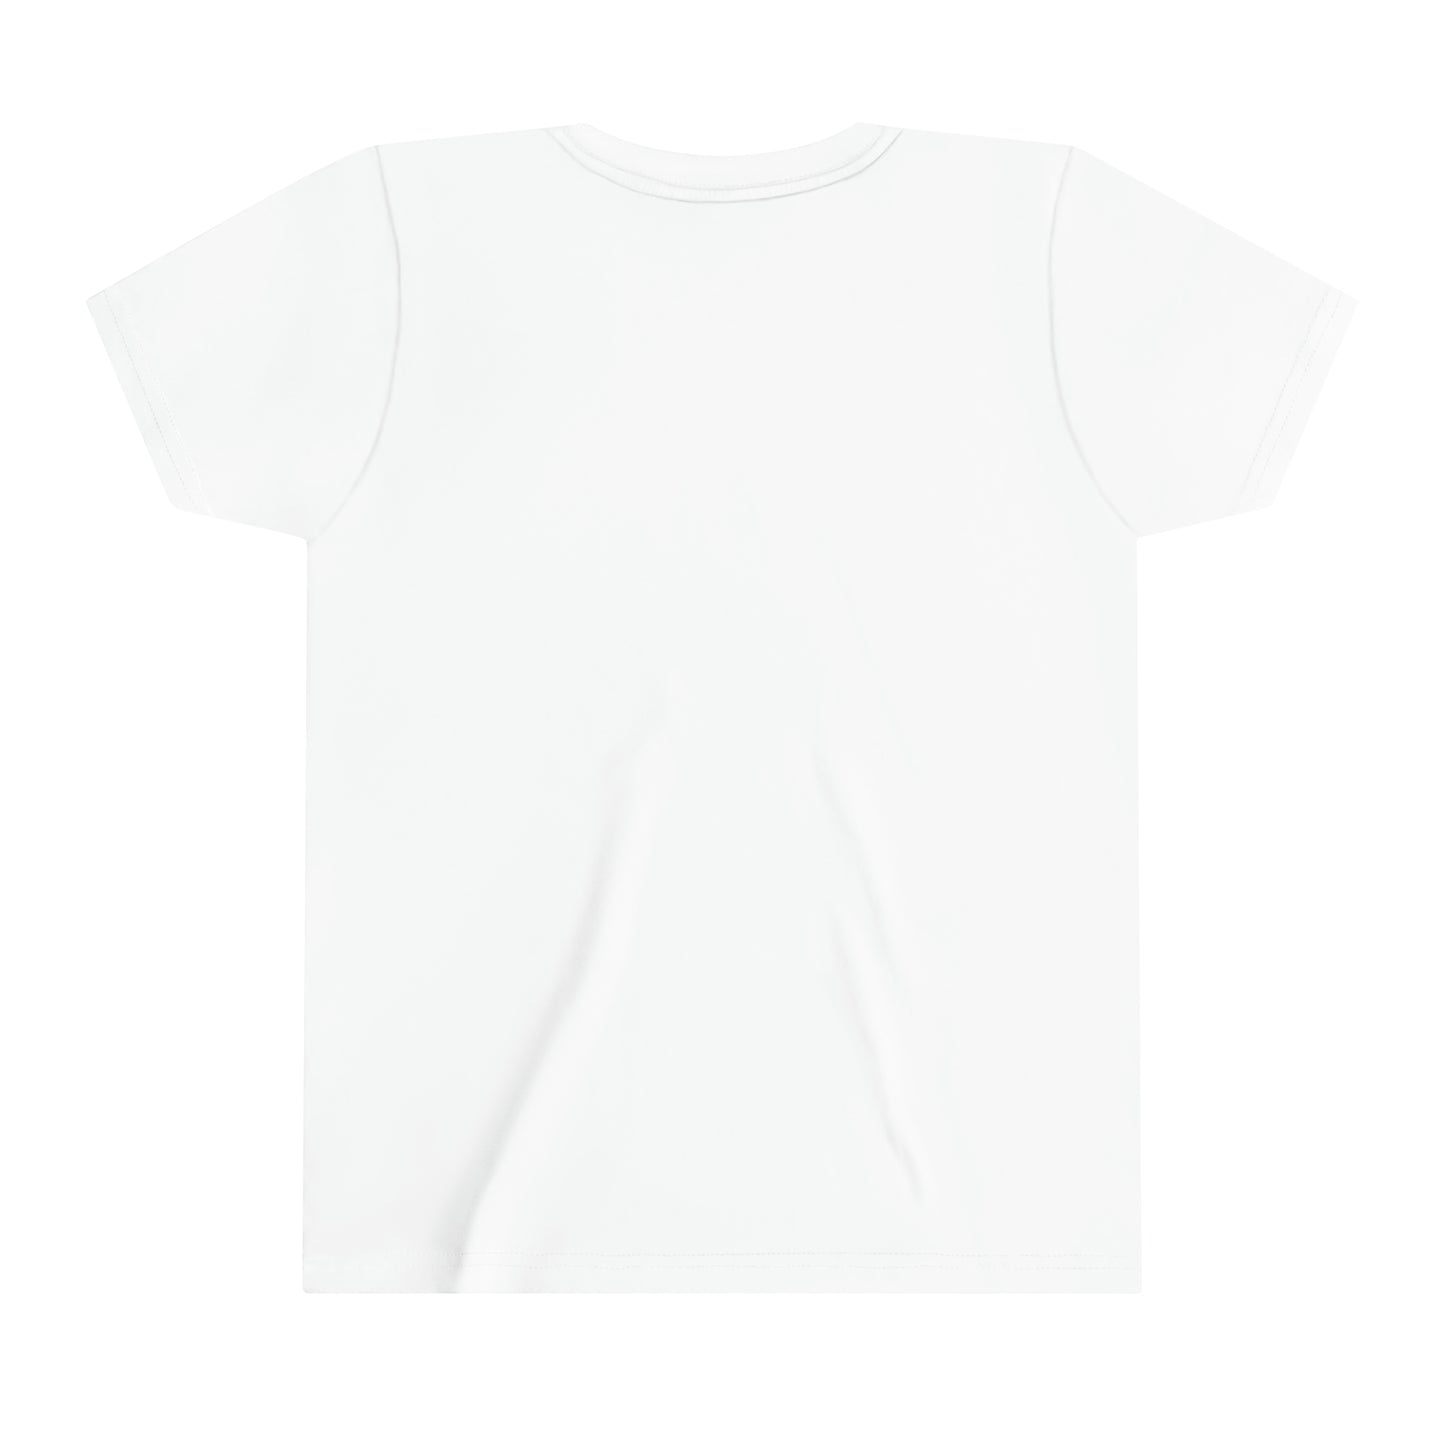 The Chosen 144k T-Shirt